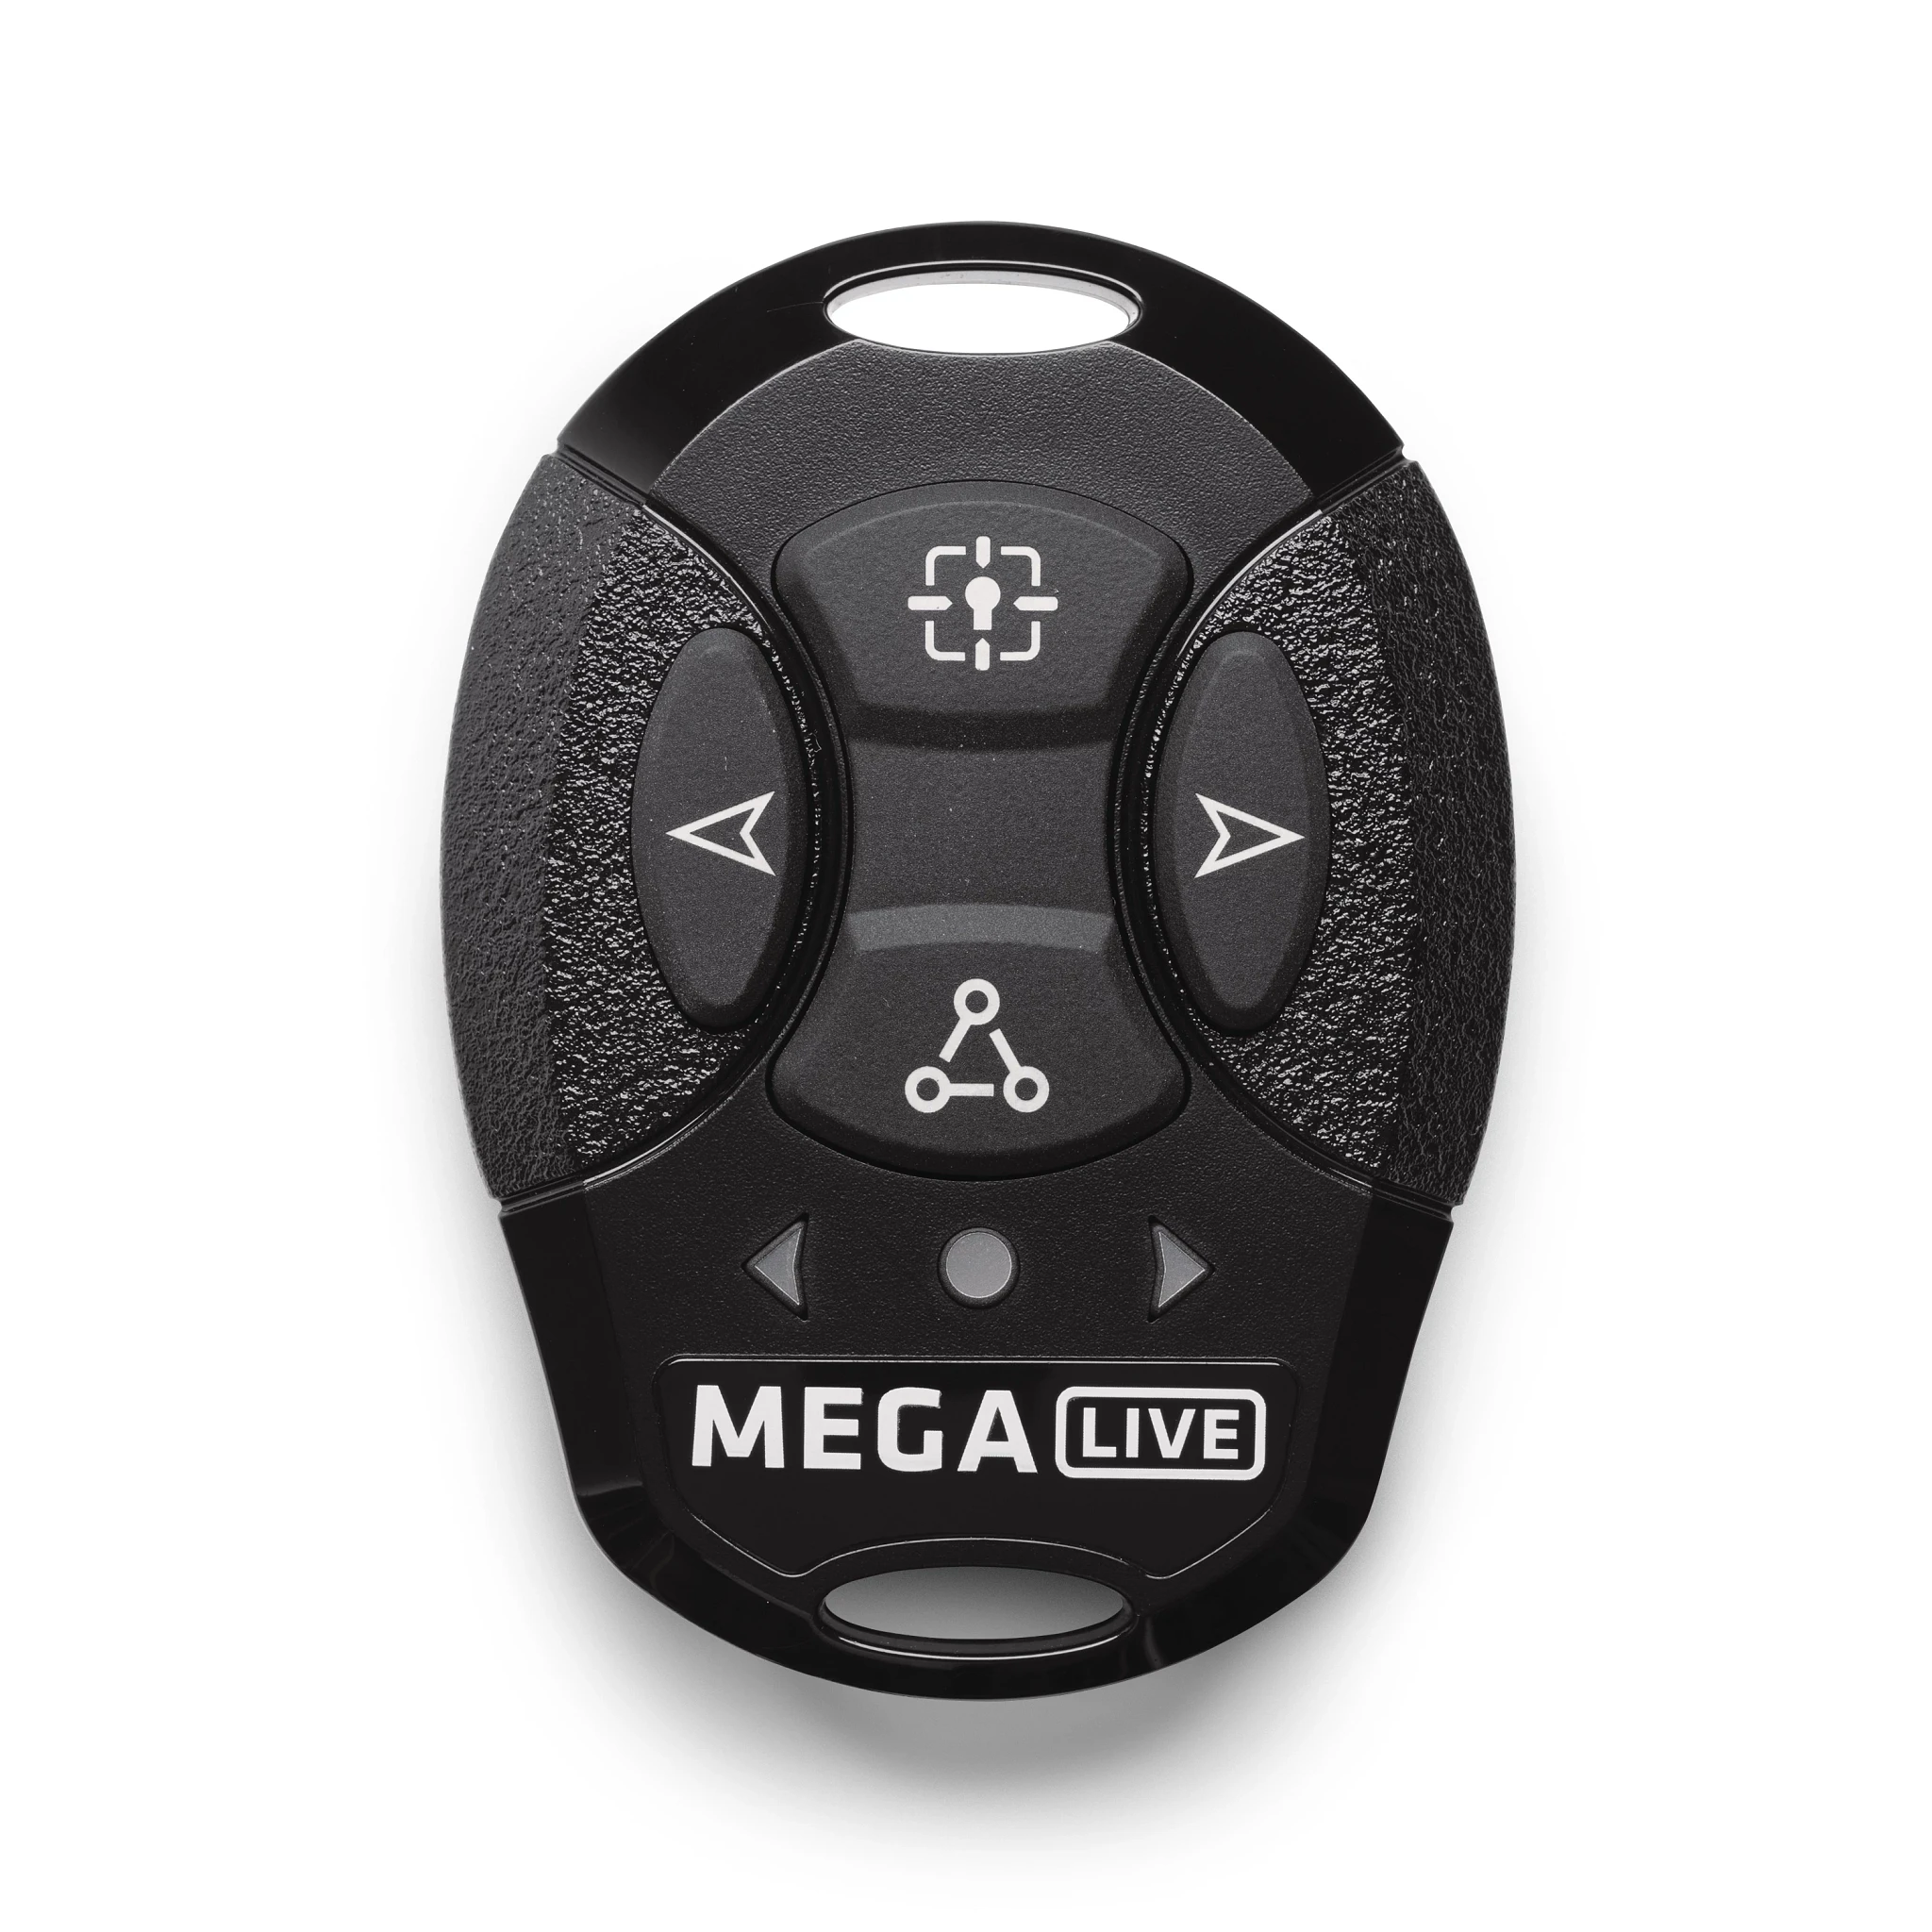 MEGA Live TargetLock Remote